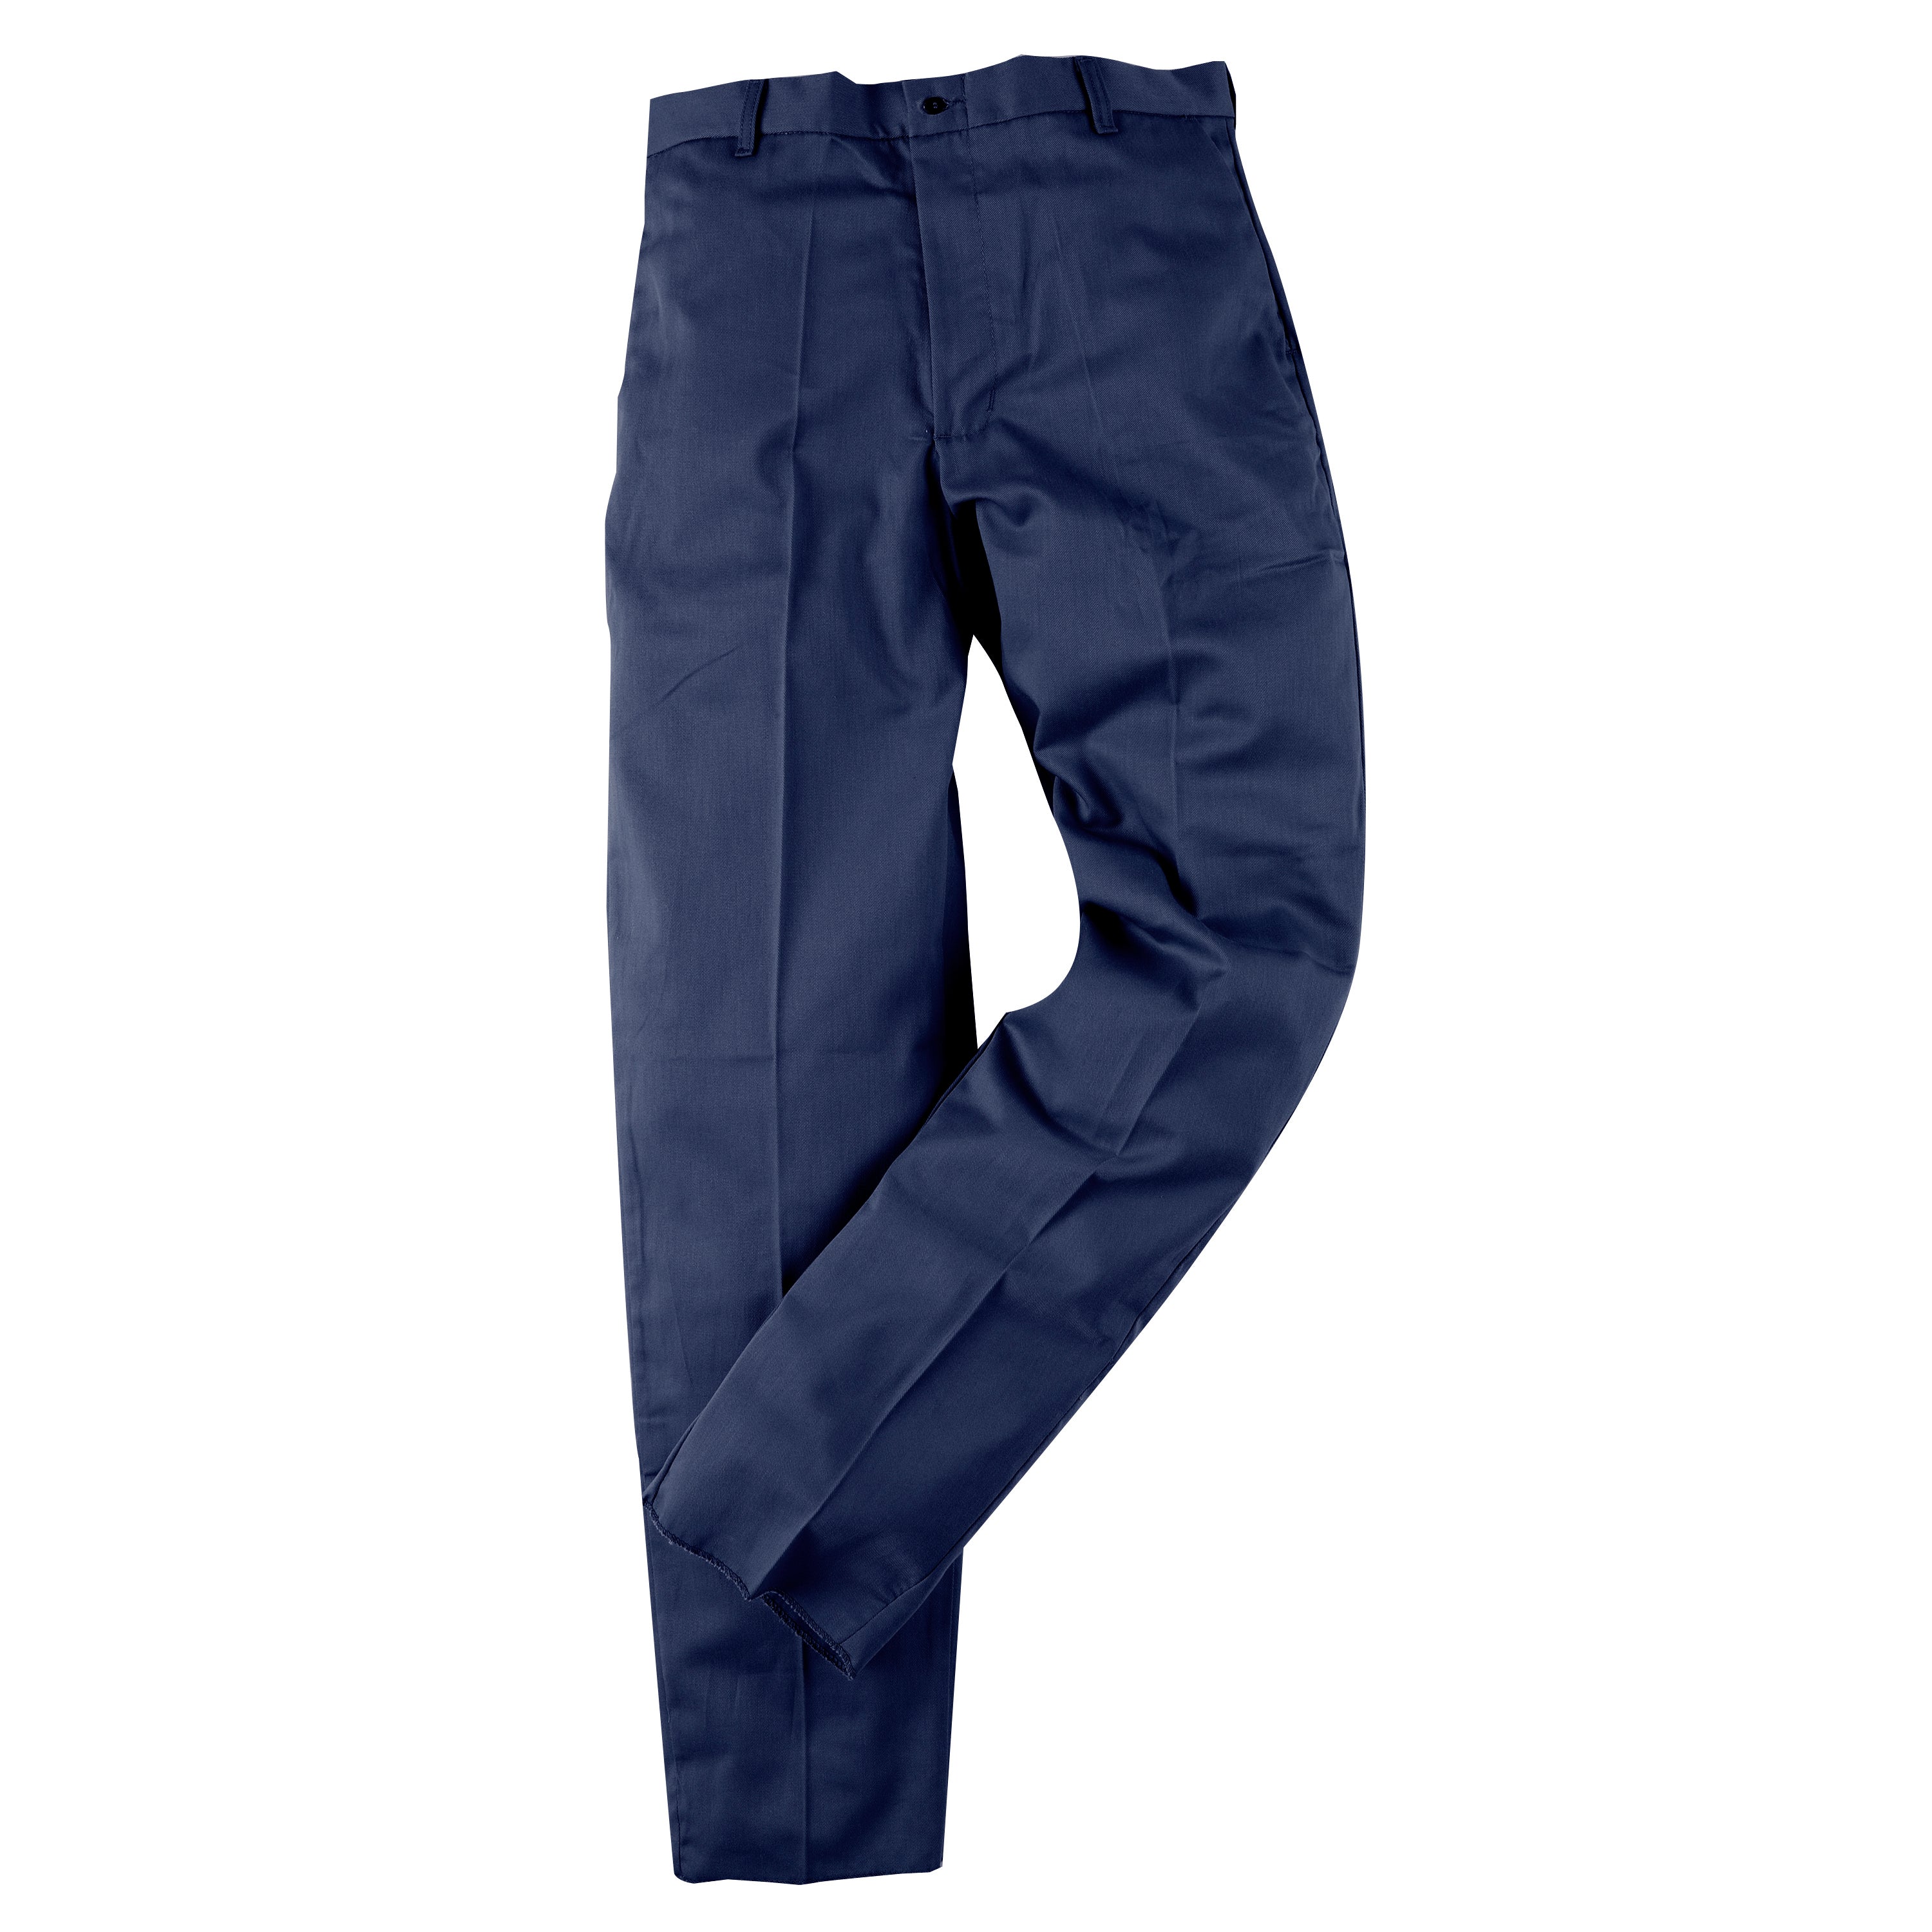 Pantalón de trabajo azul marino CAT 2 resistente al fuego 7 oz. Algodón